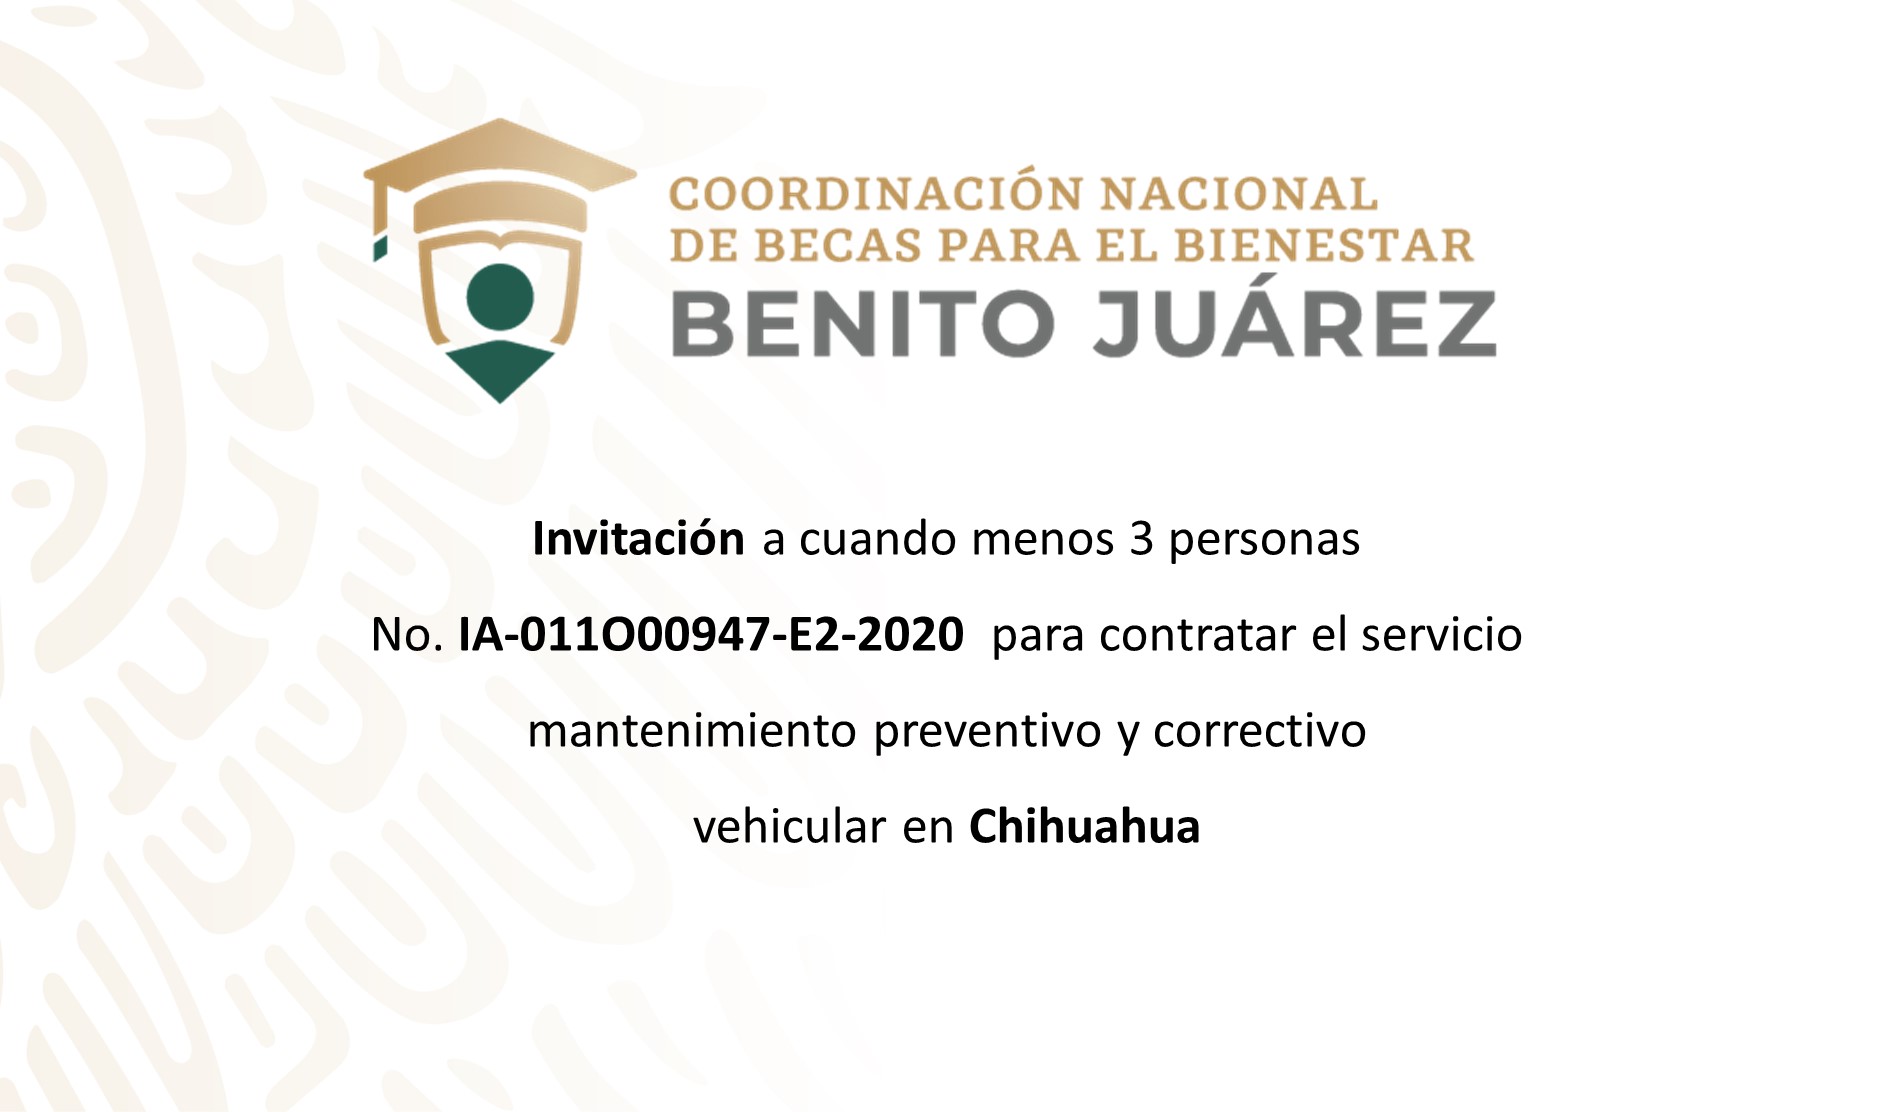 Invitación a cuando menos tres personas para contratar el servicio de mantenimiento vehicular en Chihuahua.